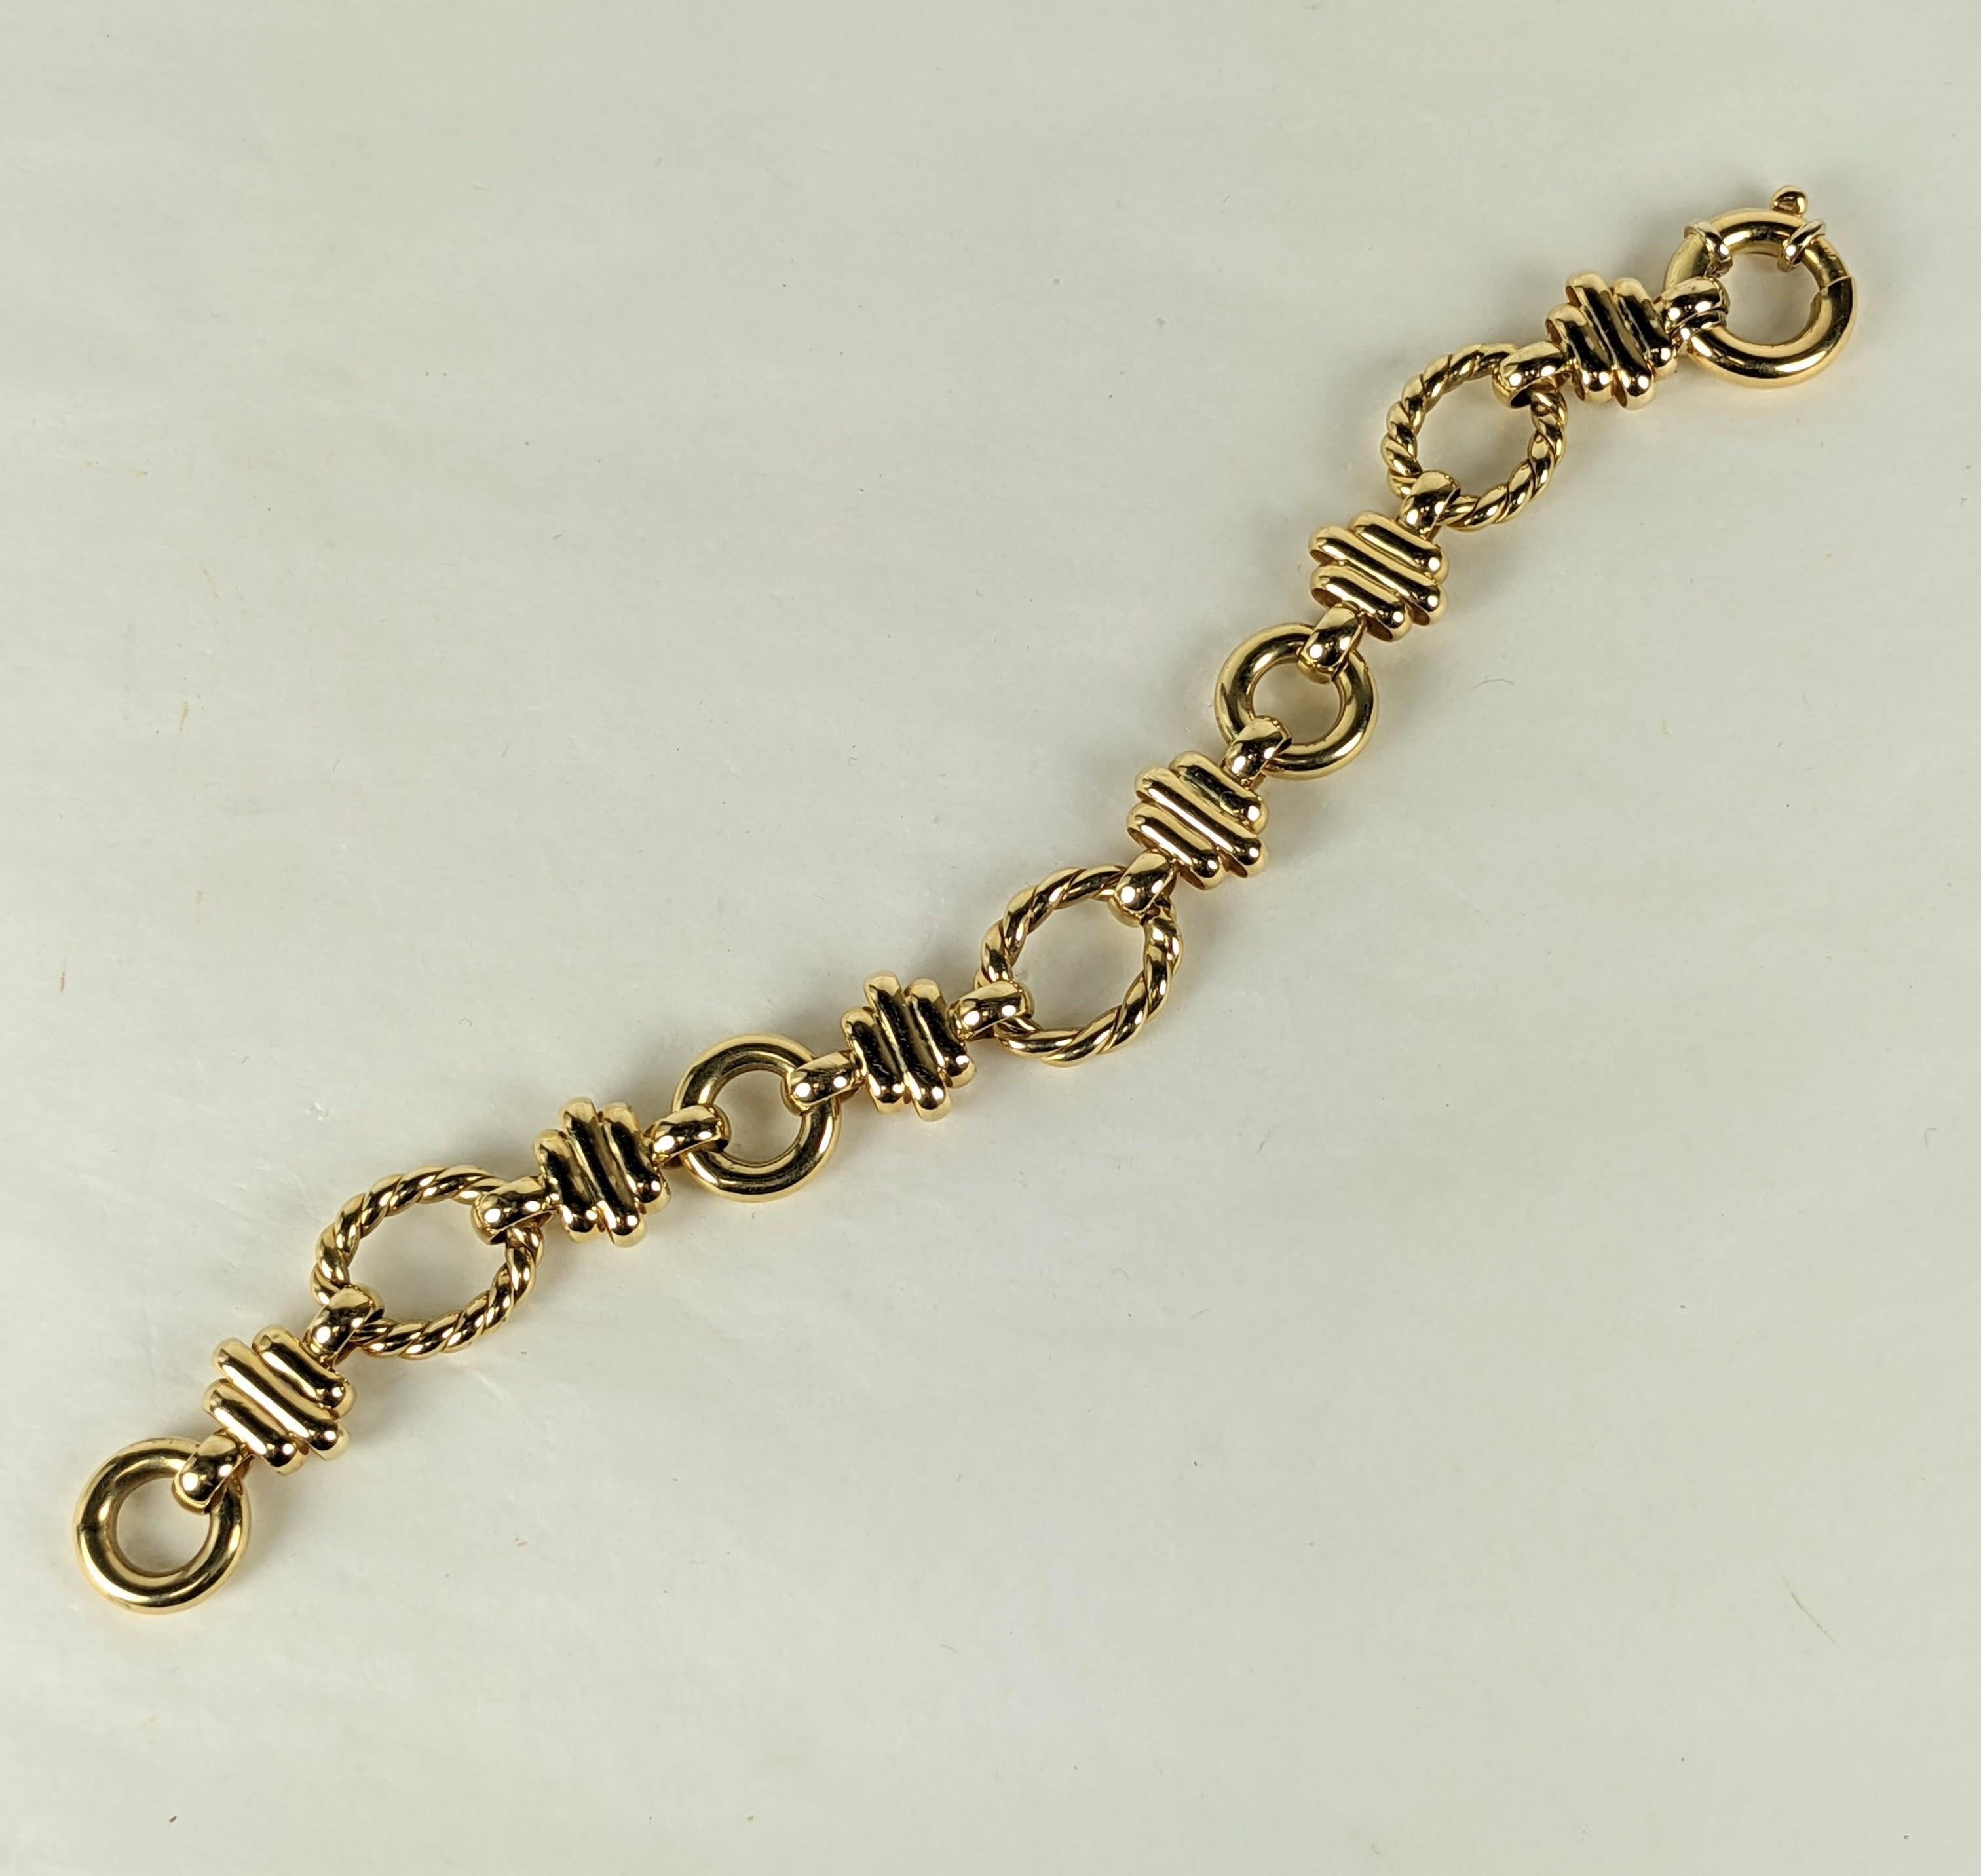 Attrayant bracelet à maillons en or italien 18 carats des années 1990, composé de boucles torsadées reliées par des entretoises nervurées à gradins. Ravissante conception facile à porter. Marqué 